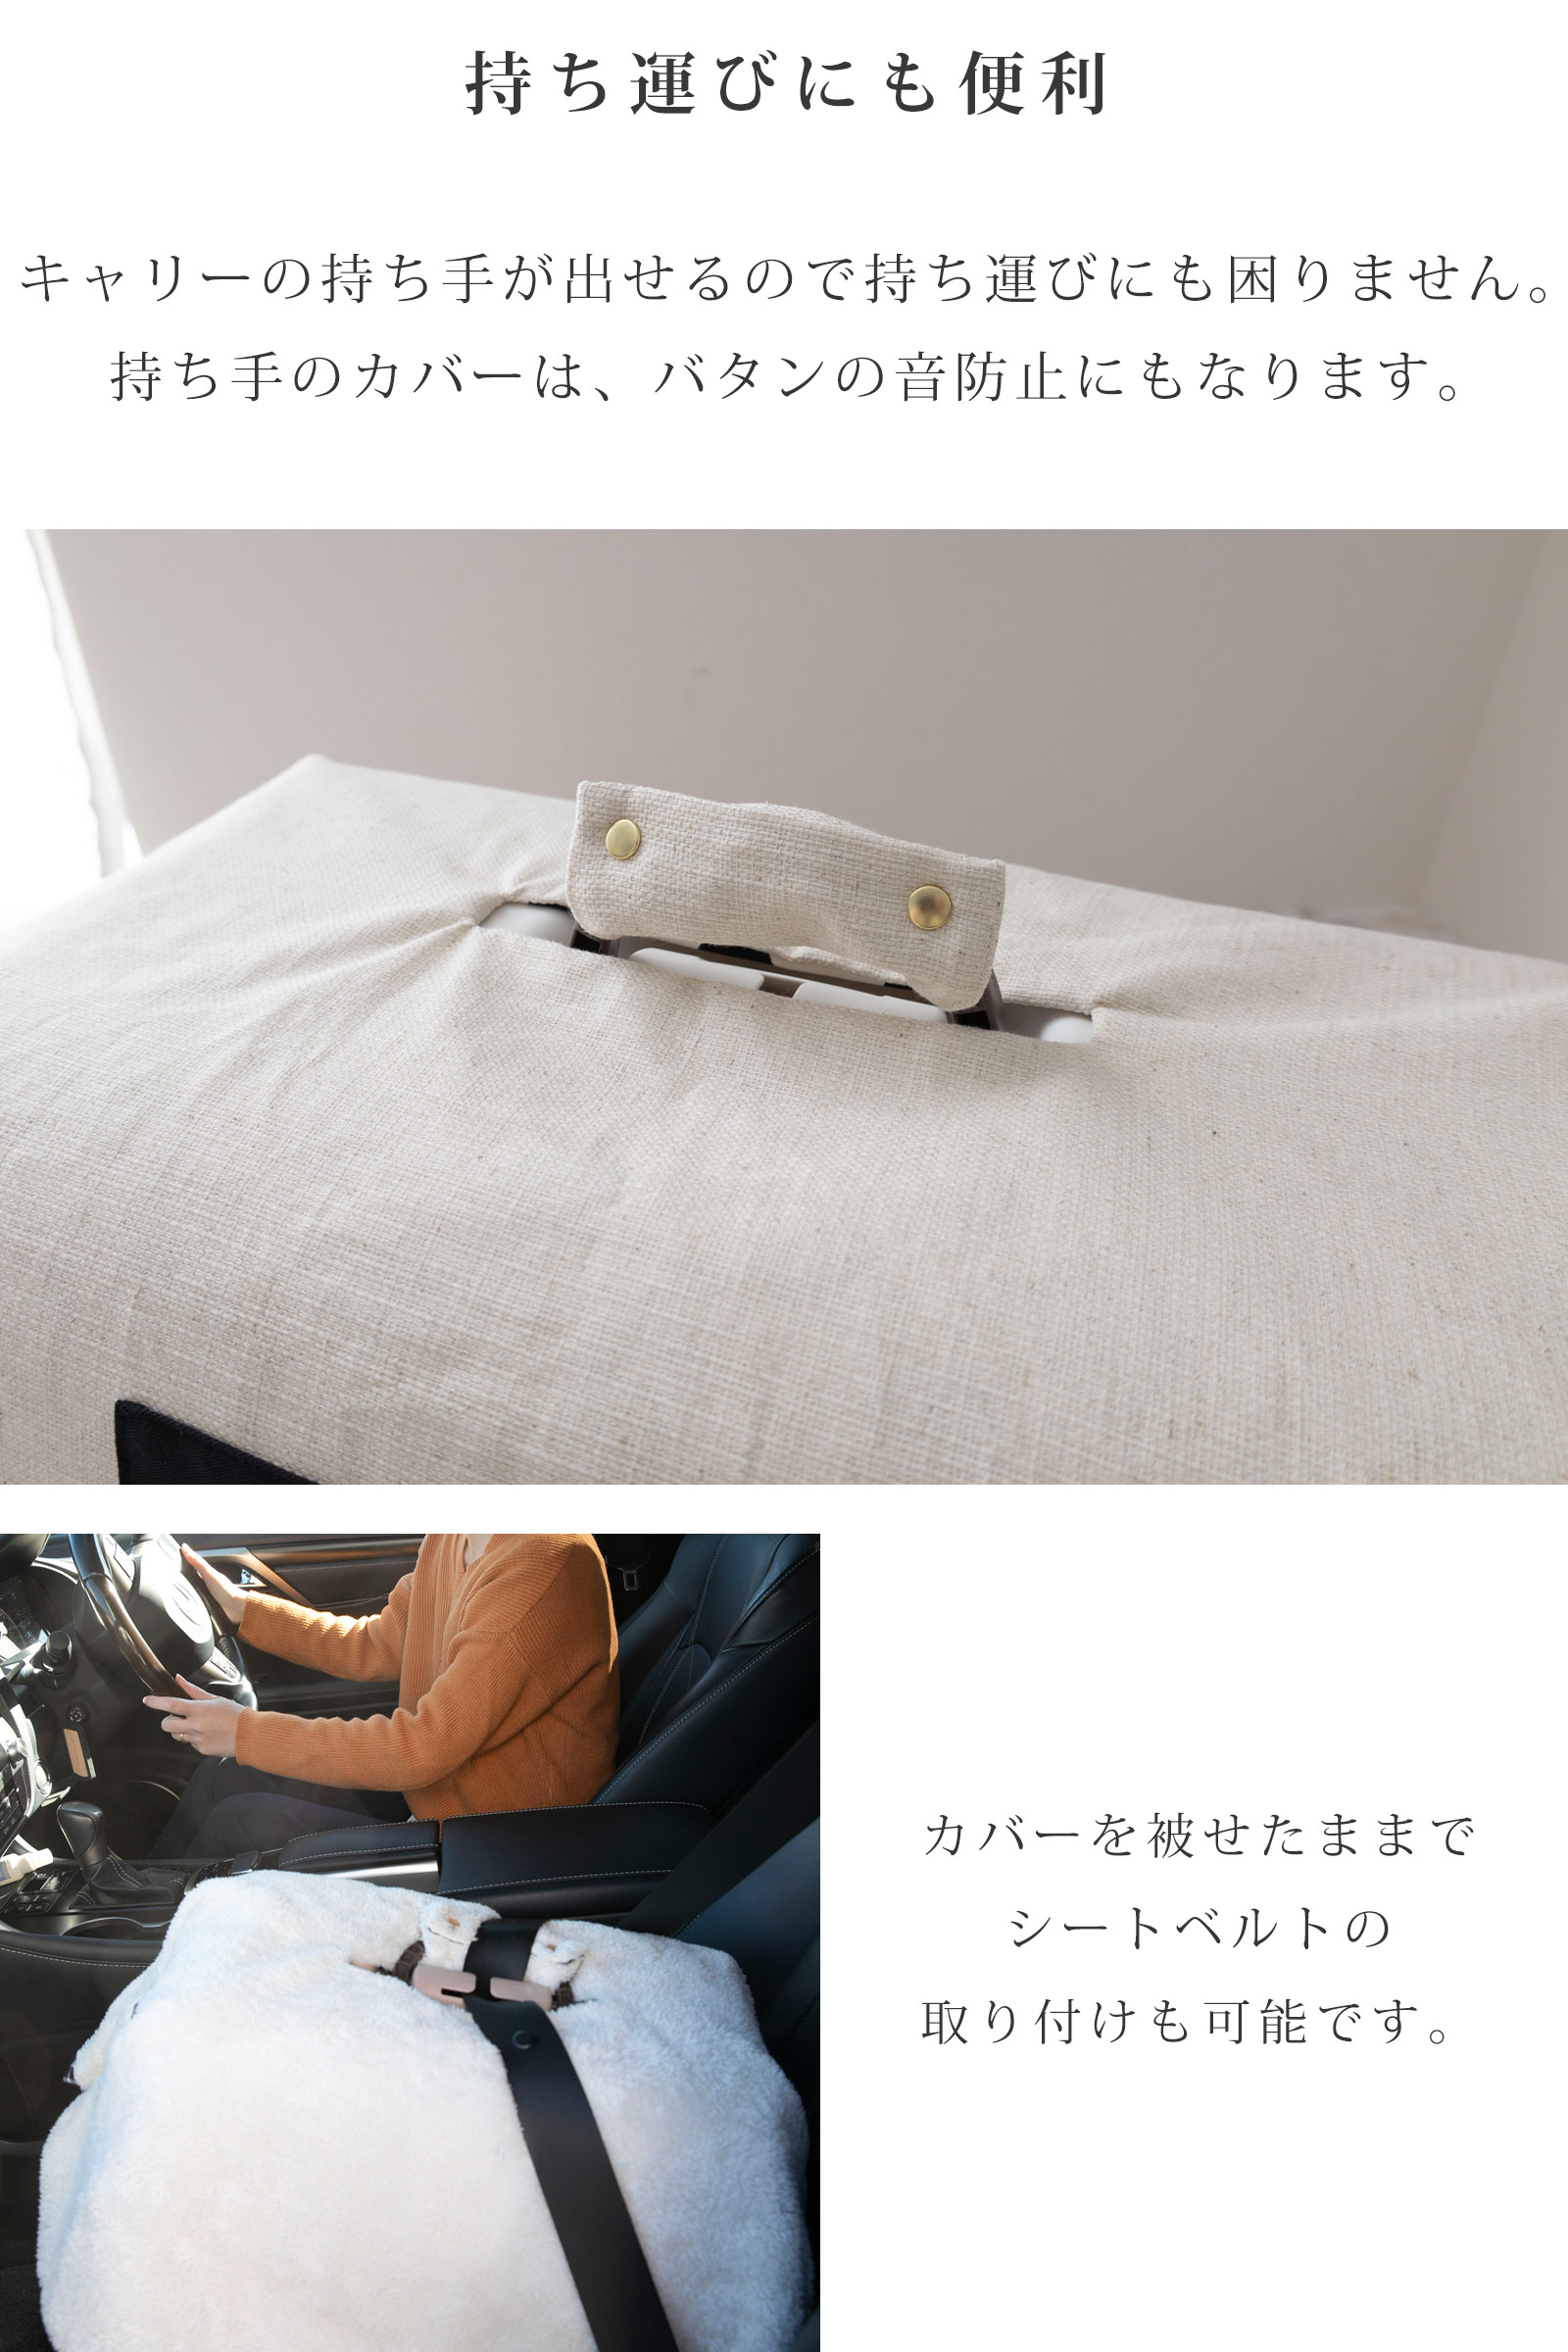 日本製 キャリー用カバー クレートカバー 持ち運びに便利 持ちてカバー付き